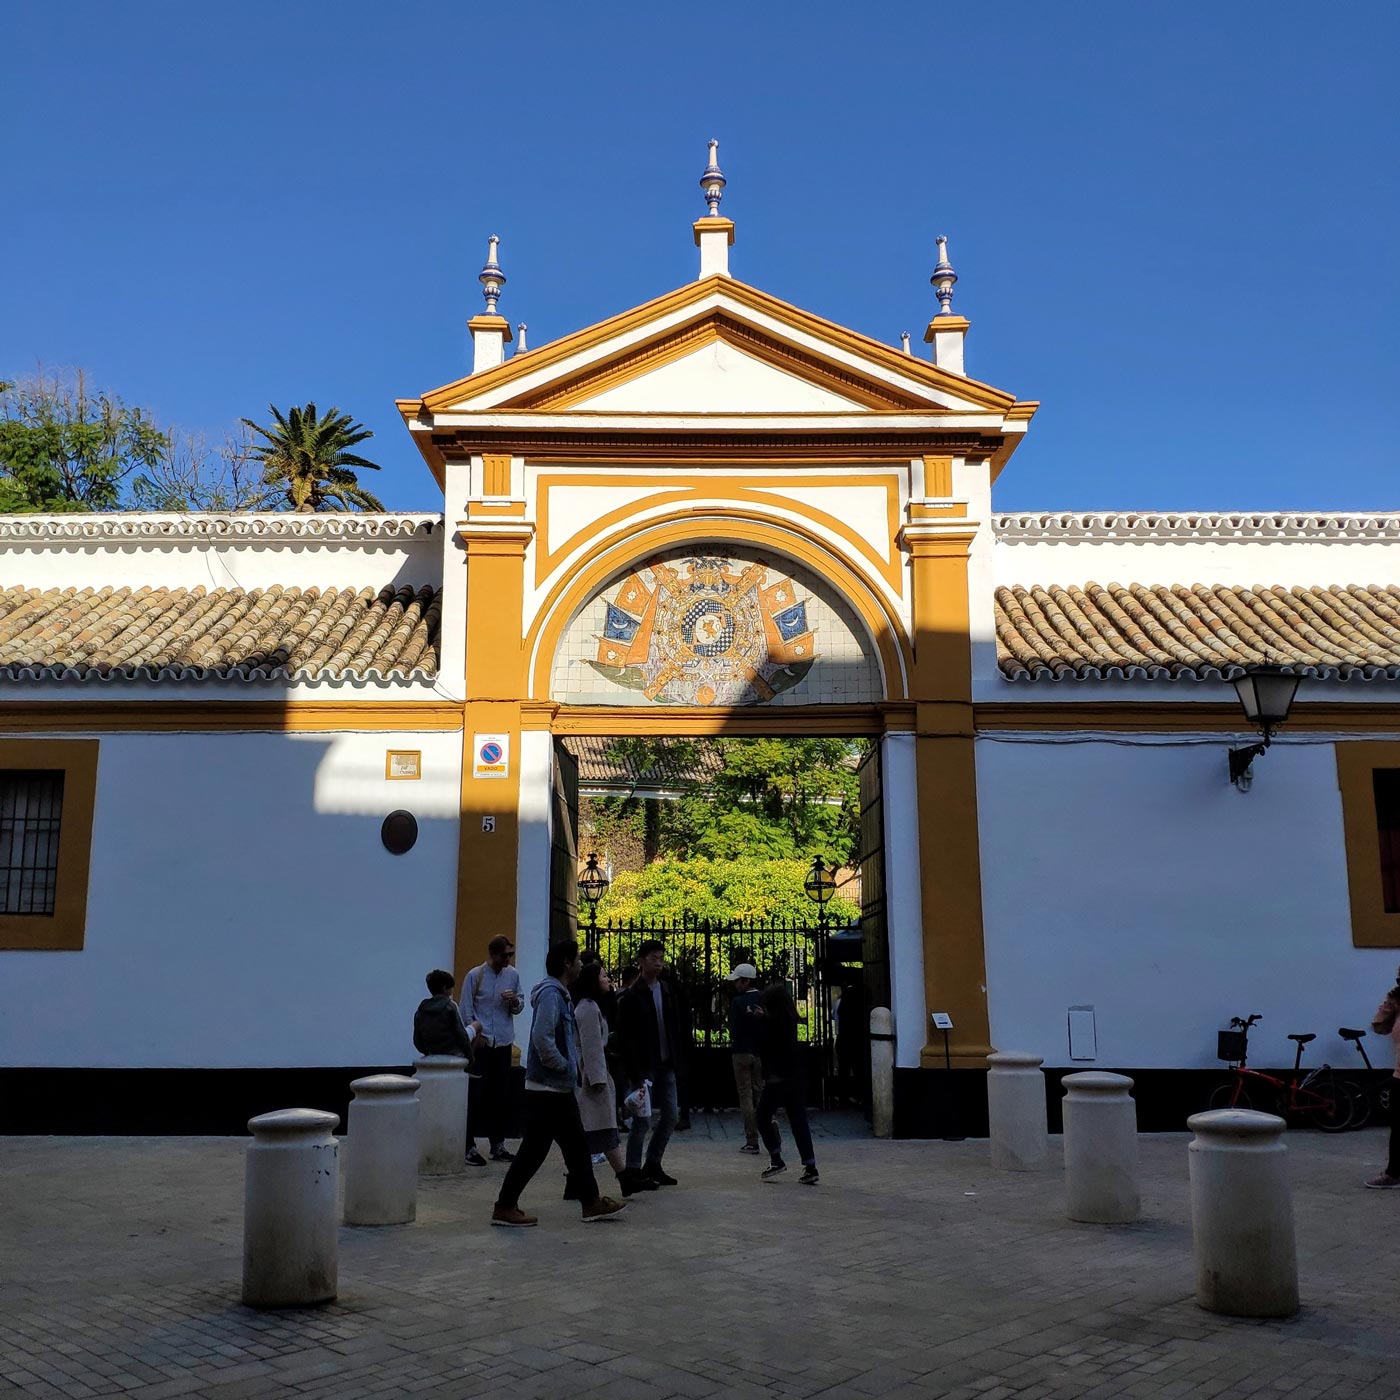 Palacio de Dueñas - Sevilla